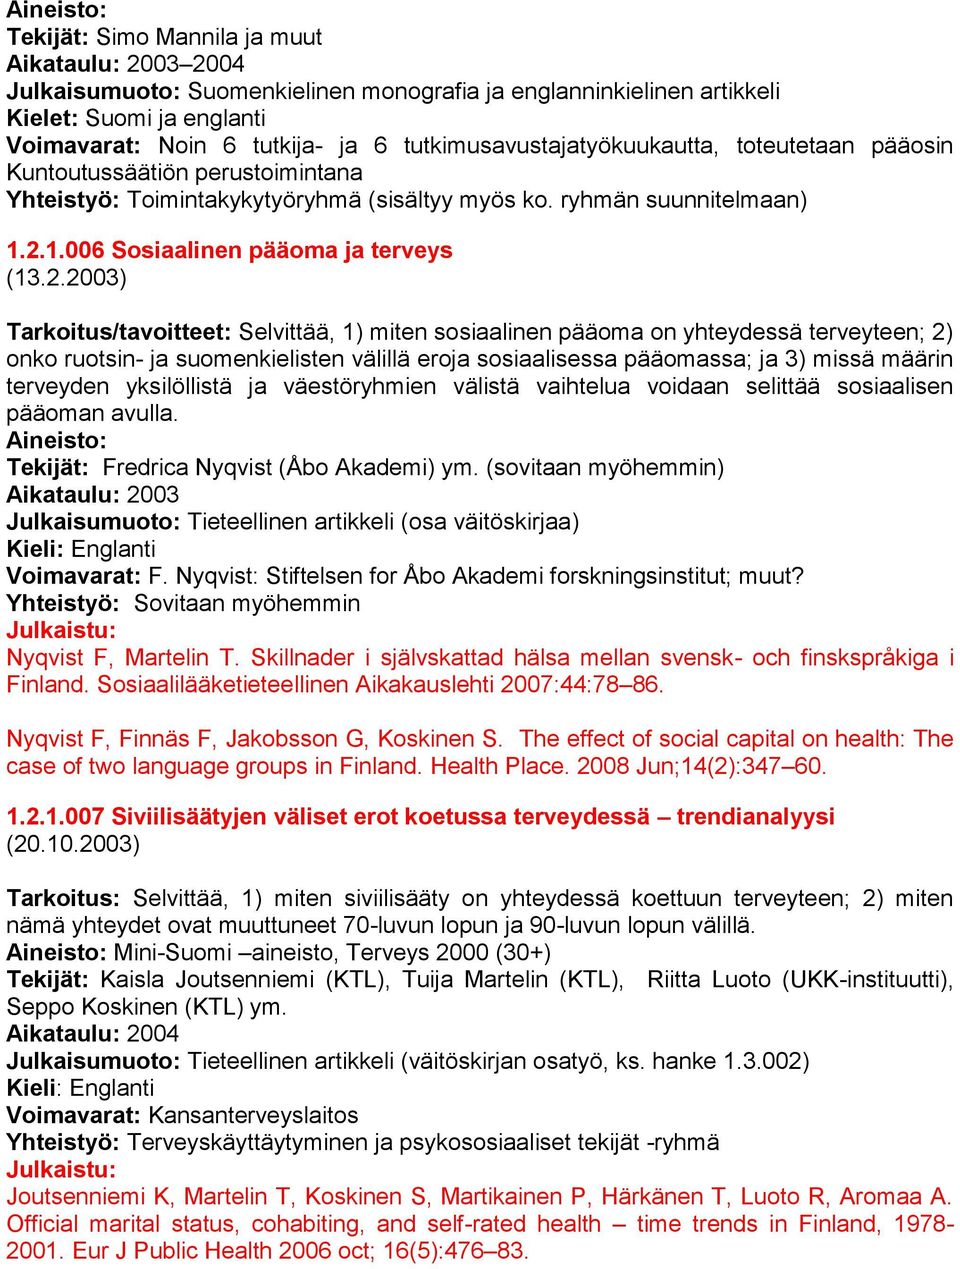 2.2003) Tarkoitus/tavoitteet: Selvittää, 1) miten sosiaalinen pääoma on yhteydessä terveyteen; 2) onko ruotsin- ja suomenkielisten välillä eroja sosiaalisessa pääomassa; ja 3) missä määrin terveyden